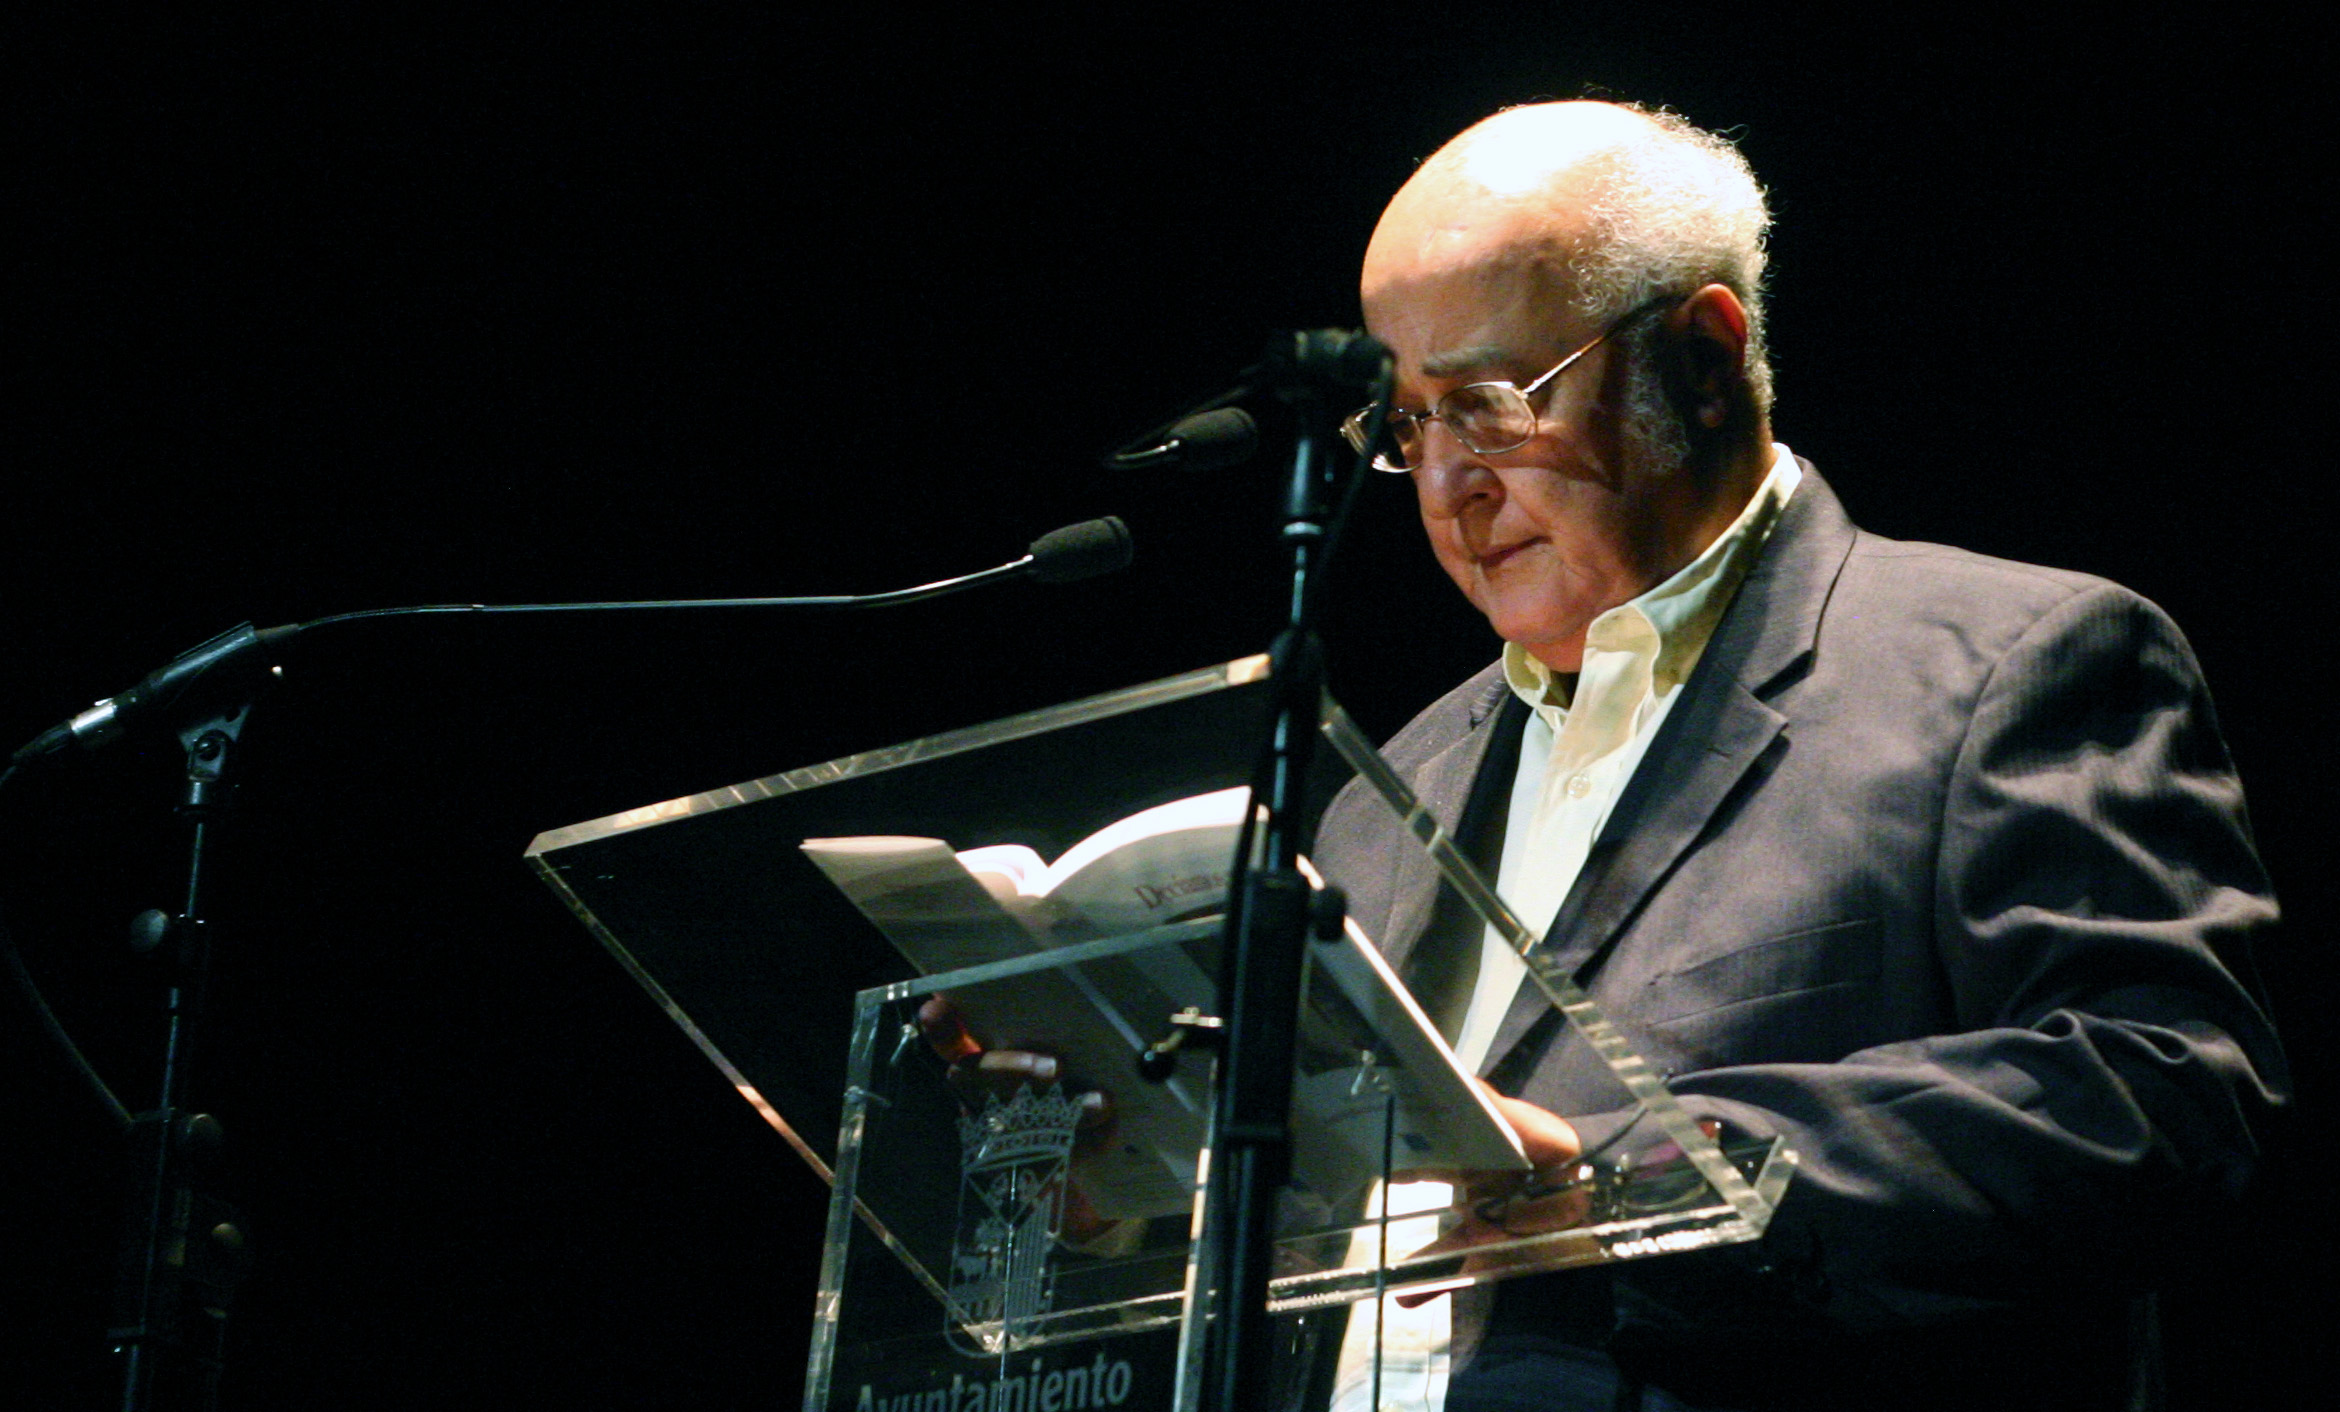 Foto 3 - El destacado escritor brasileño Cyro de Mattos dedica su último poemario a Alencart